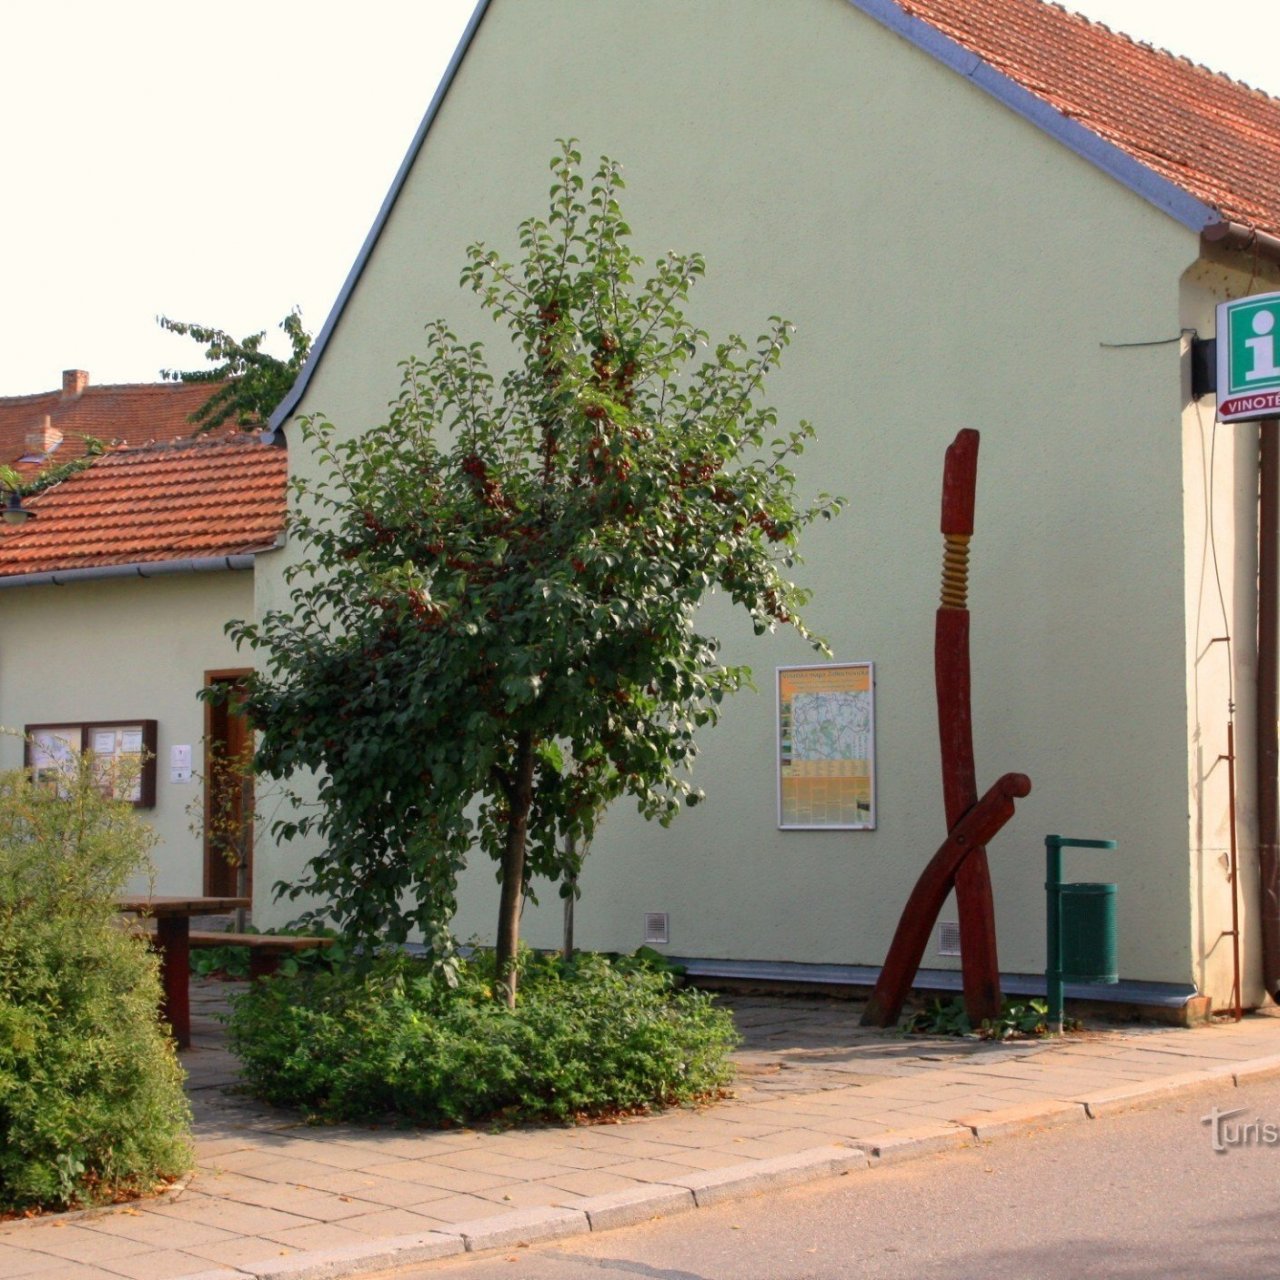 Židlochovice - Regionální turistické informační centrum s vinotékou